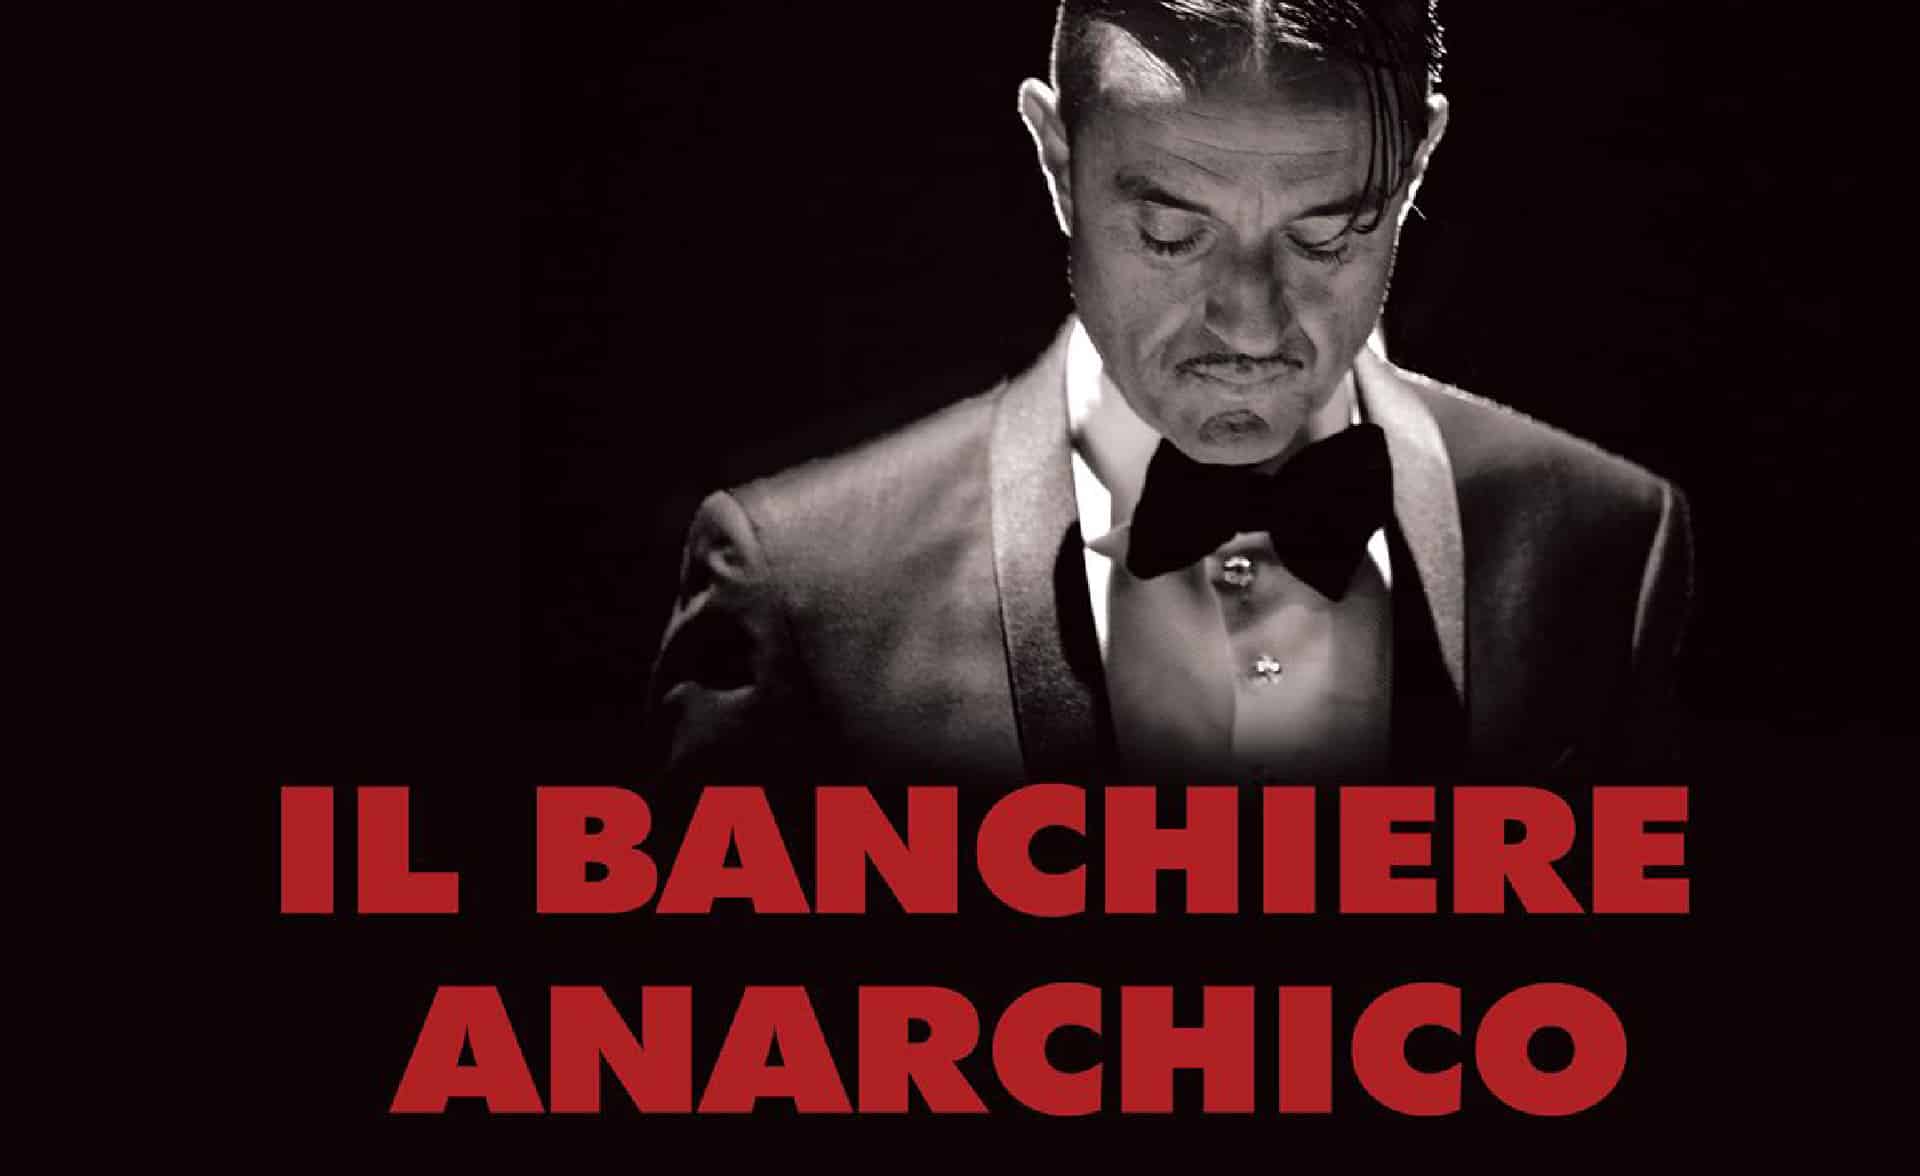 Il banchiere anarchico: il film di Giulio Base presentato a Pechino